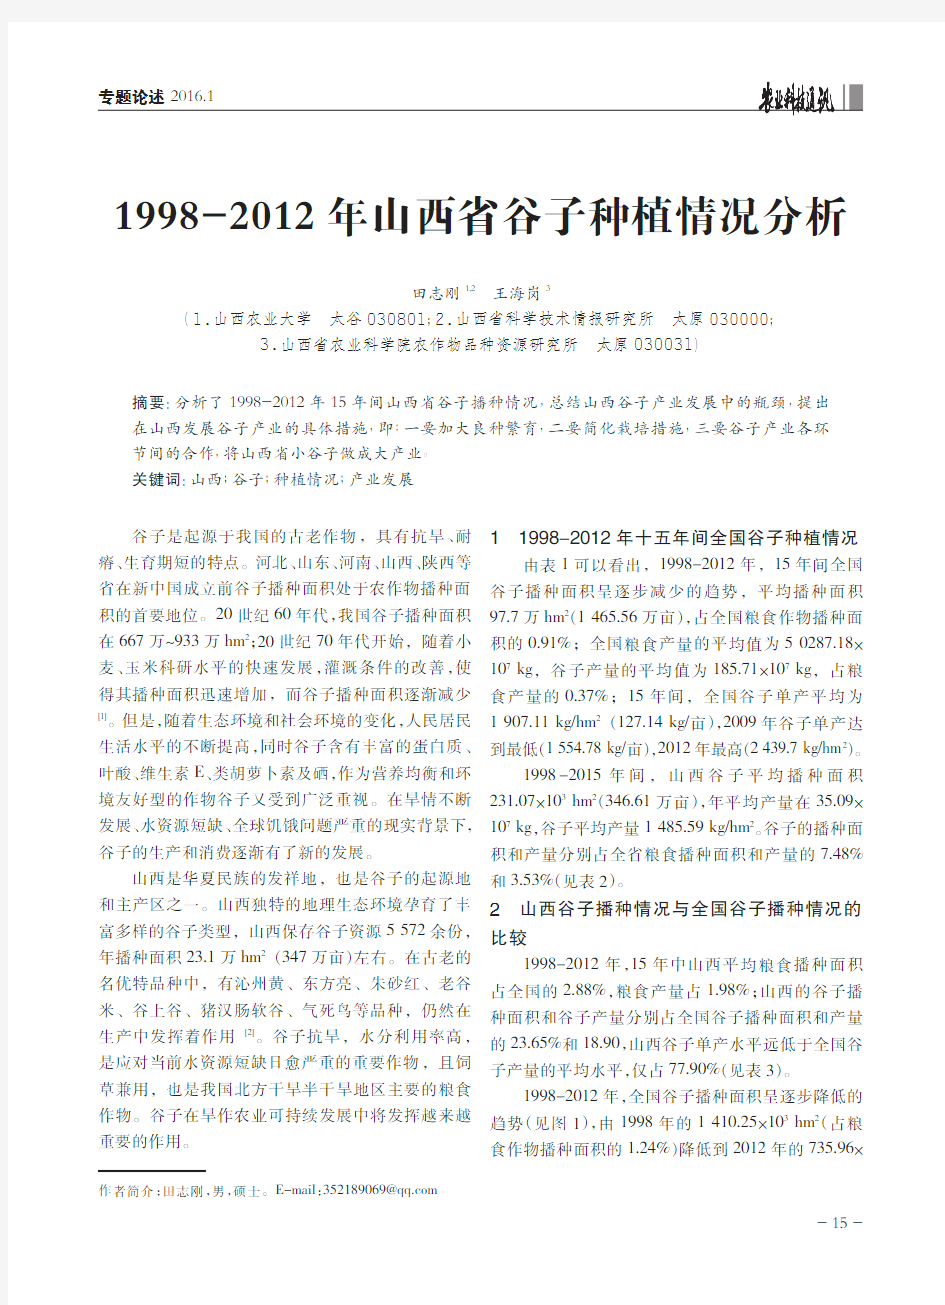 1998-2012年山西省谷子种植情况分析